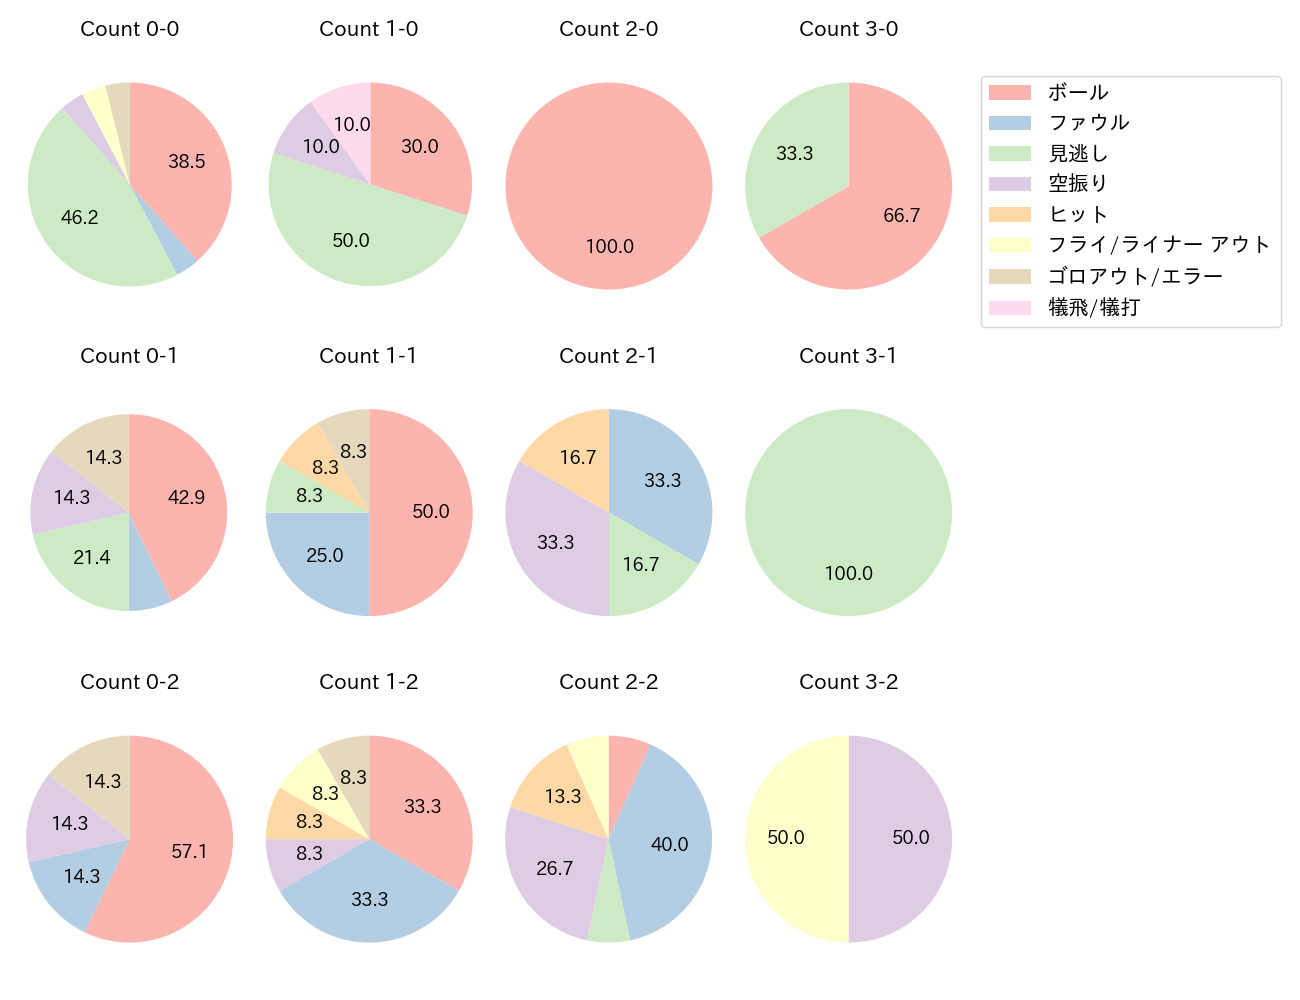 川島 慶三の球数分布(2021年5月)